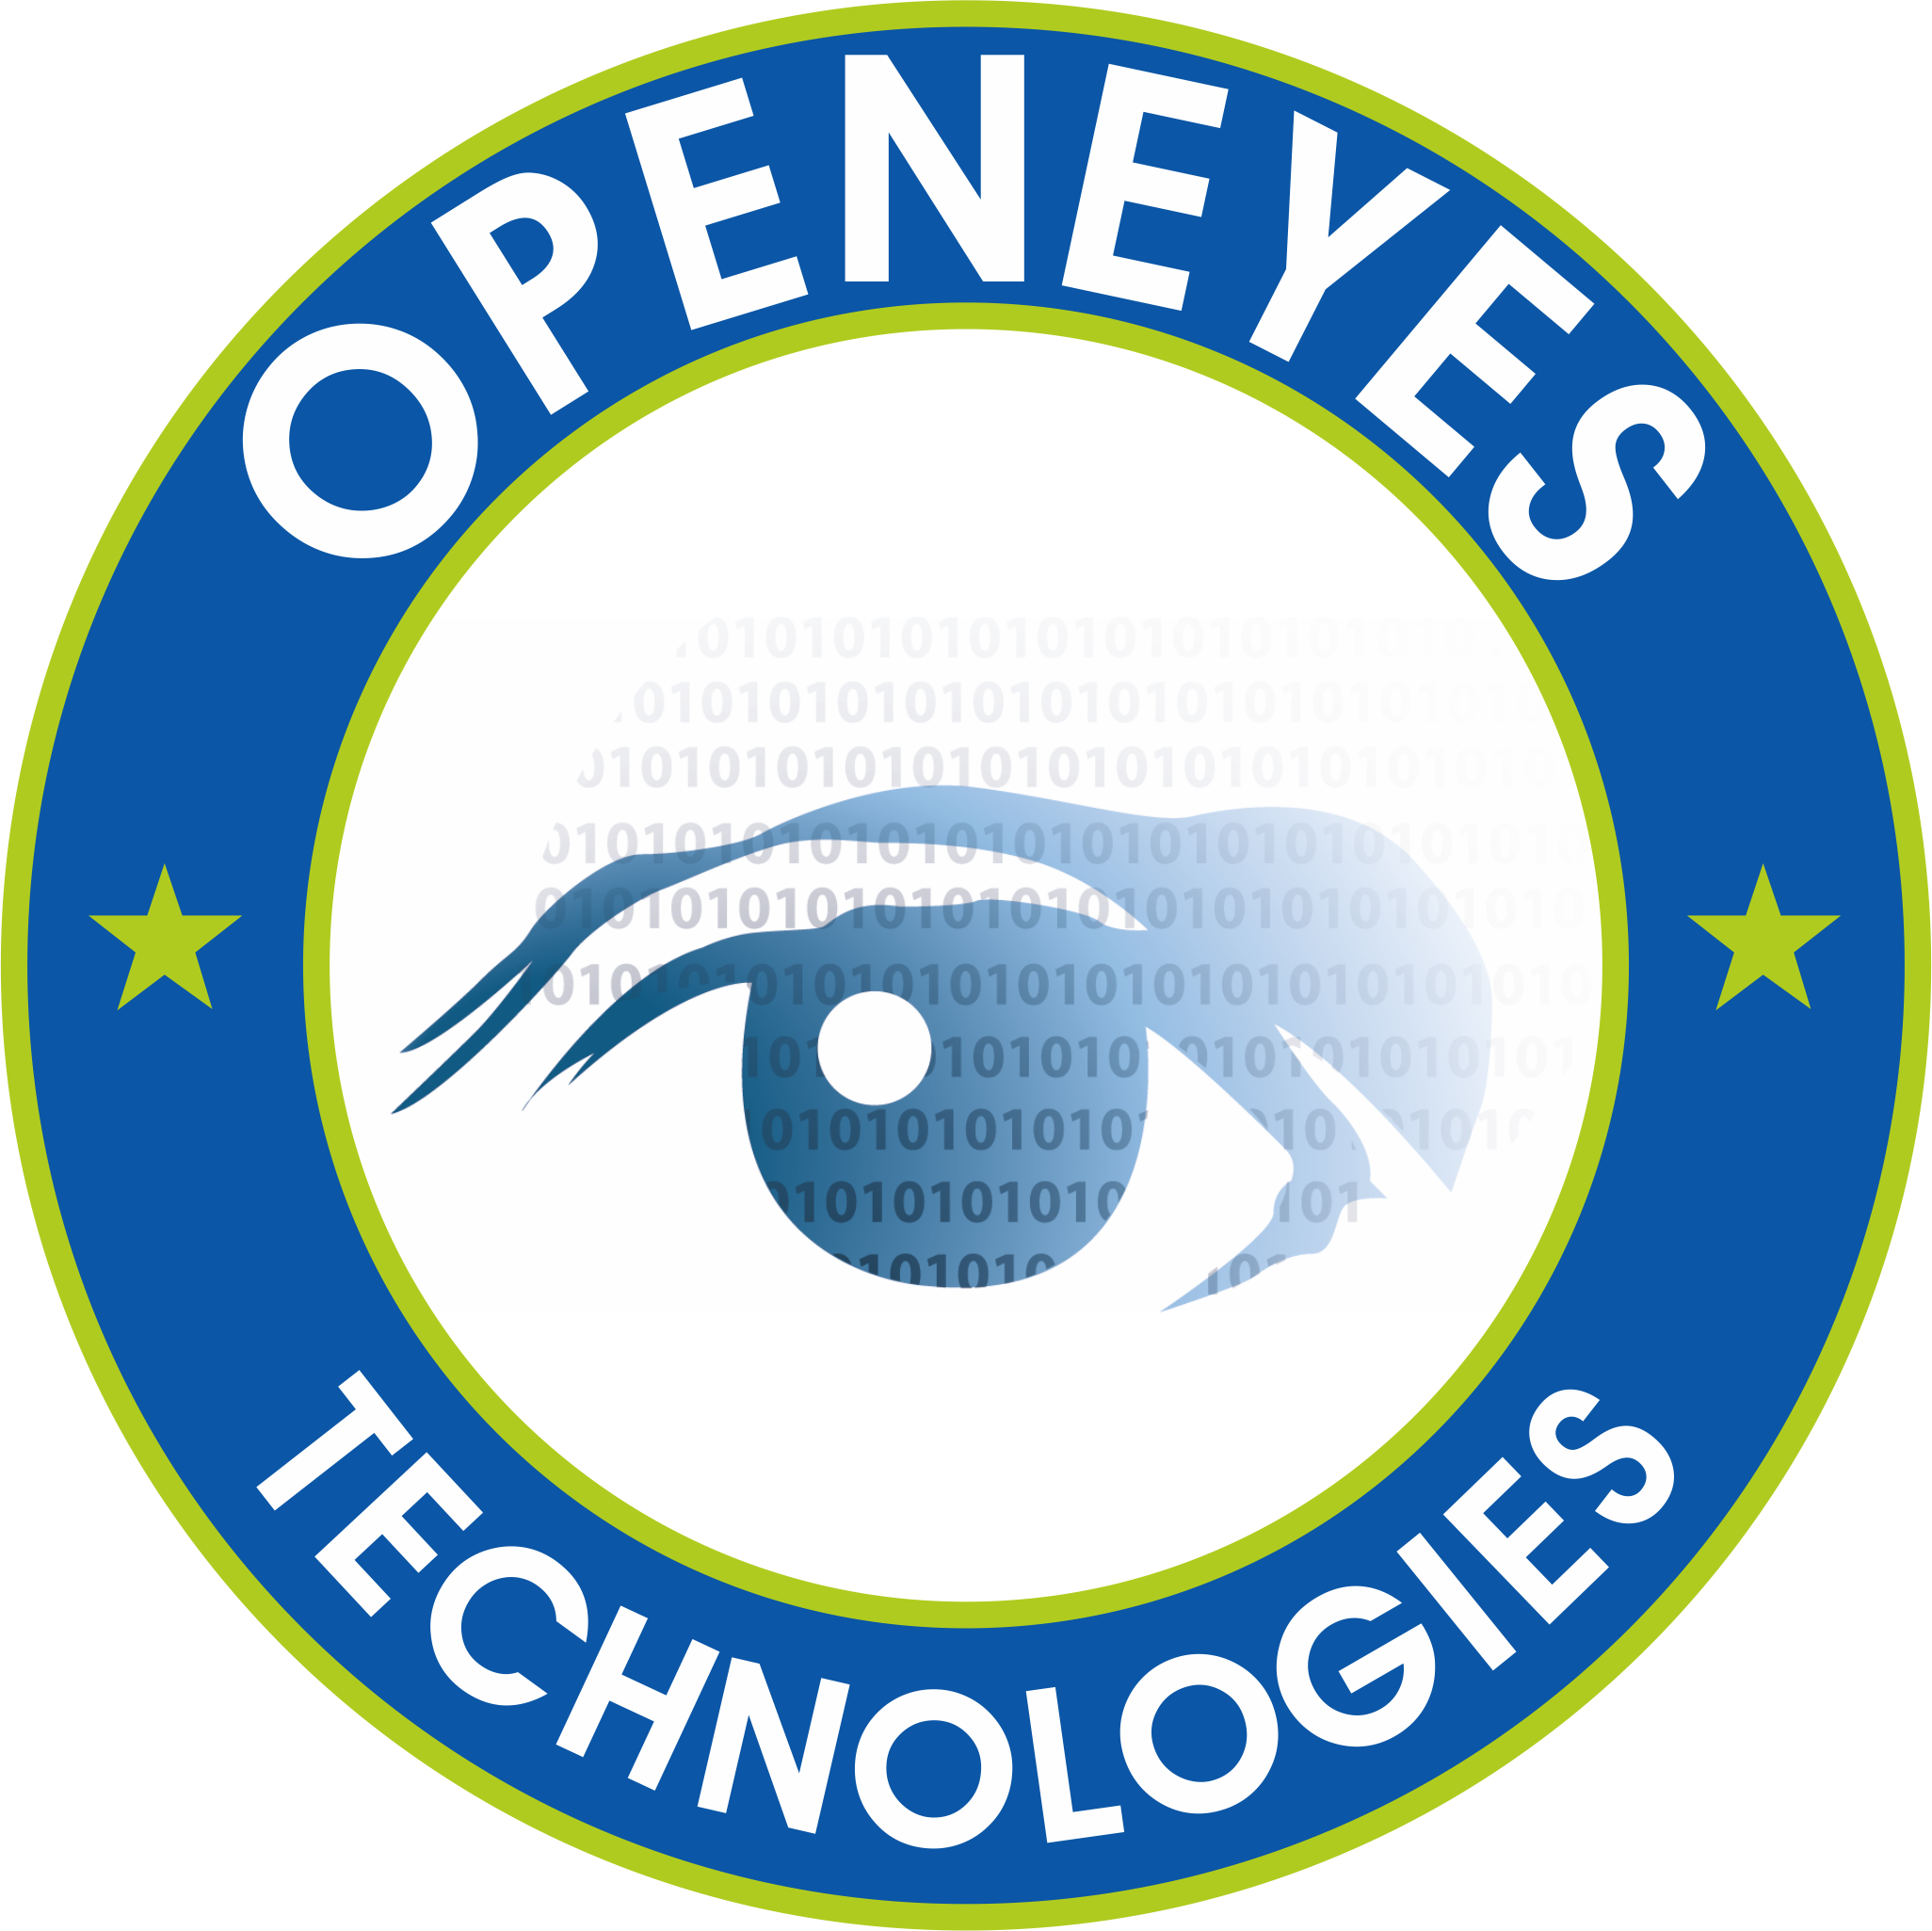 OpenEyes Technologies Inc.